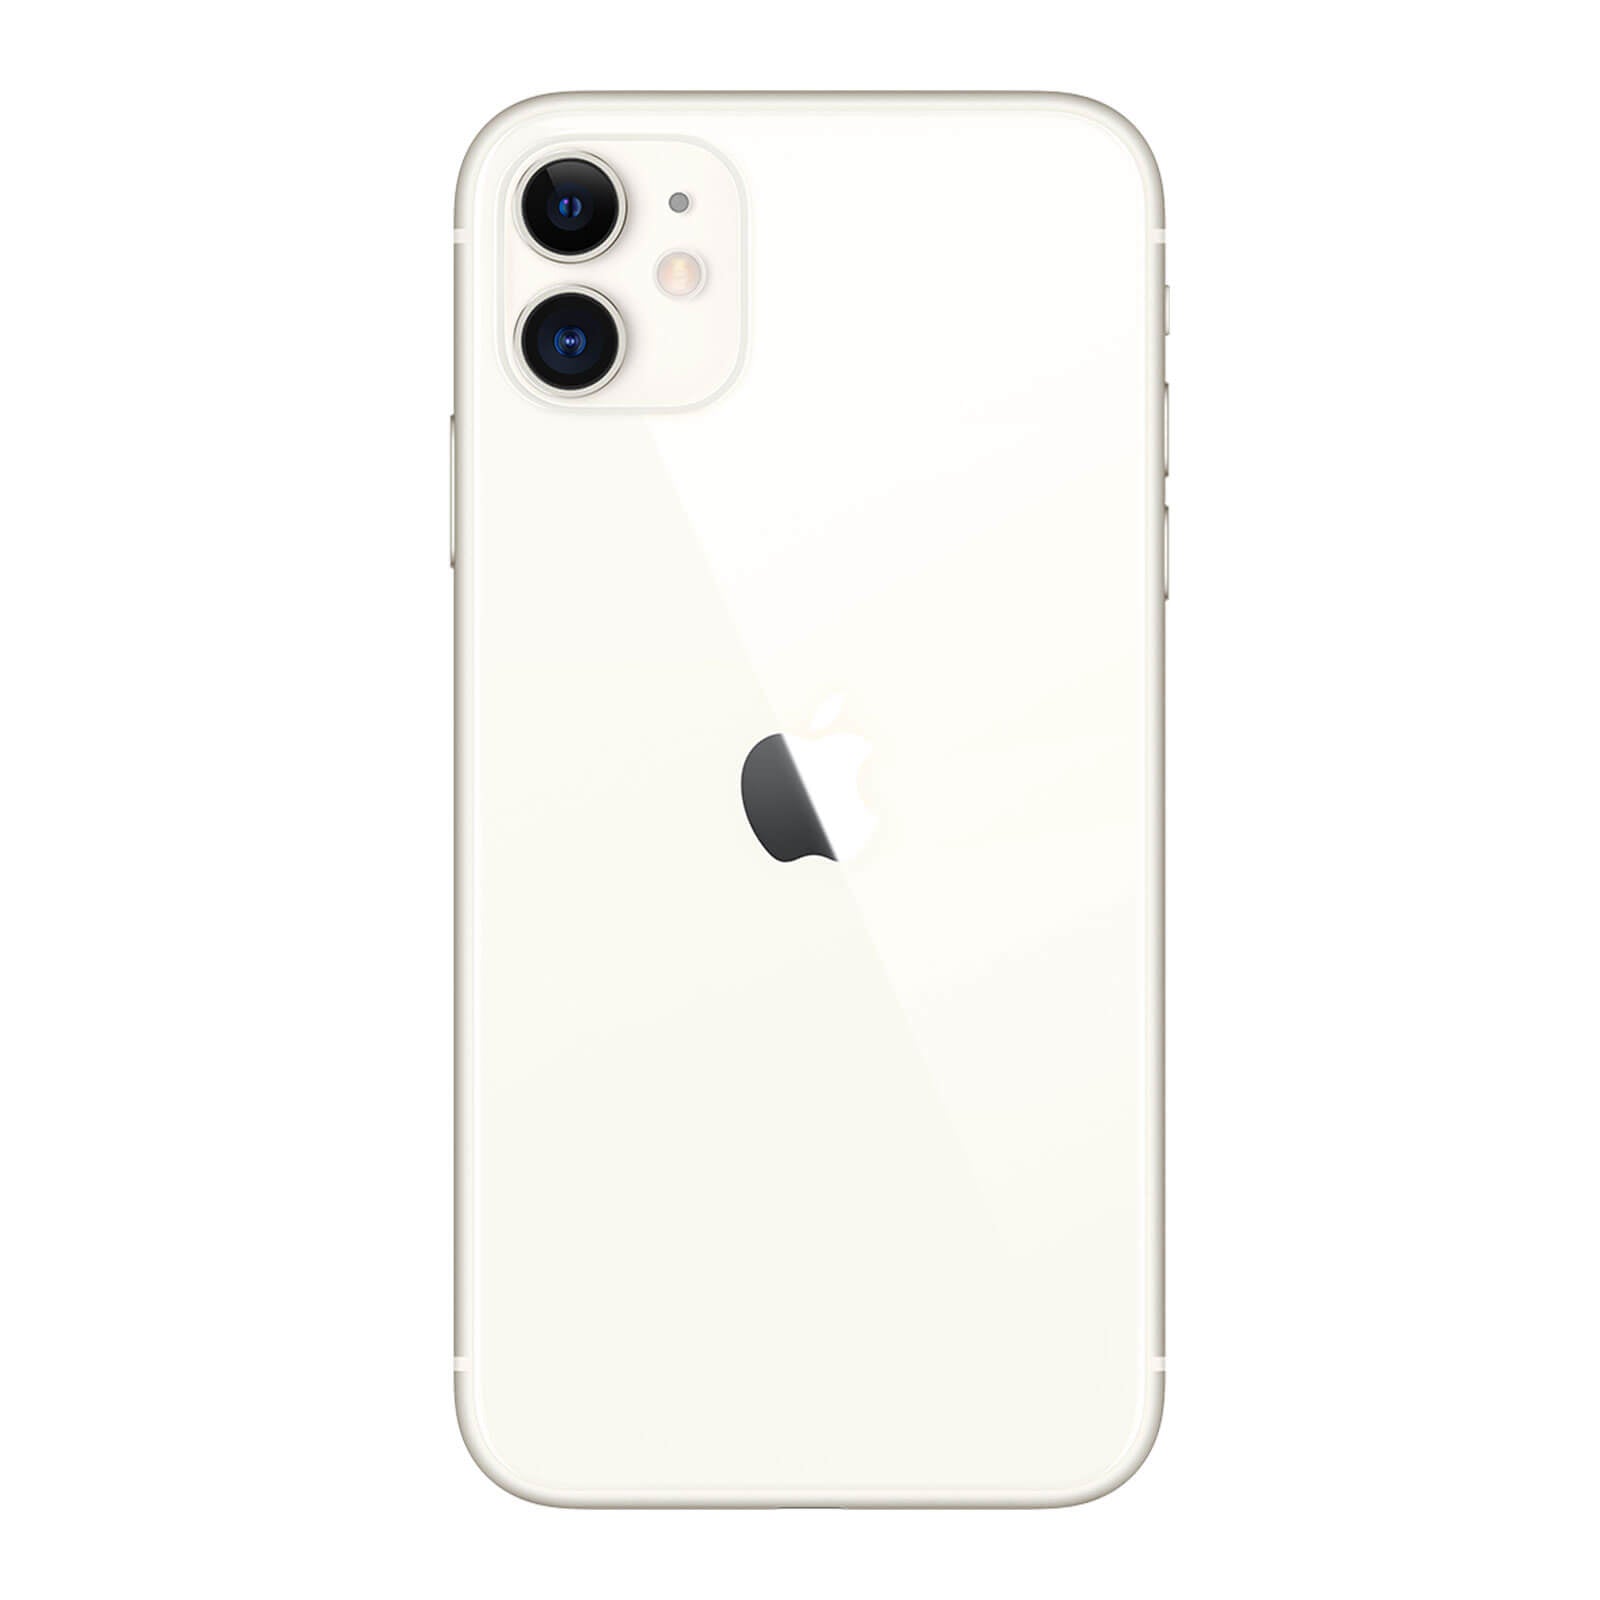 Apple iPhone 11 256GB White Pristine - T-Mobile